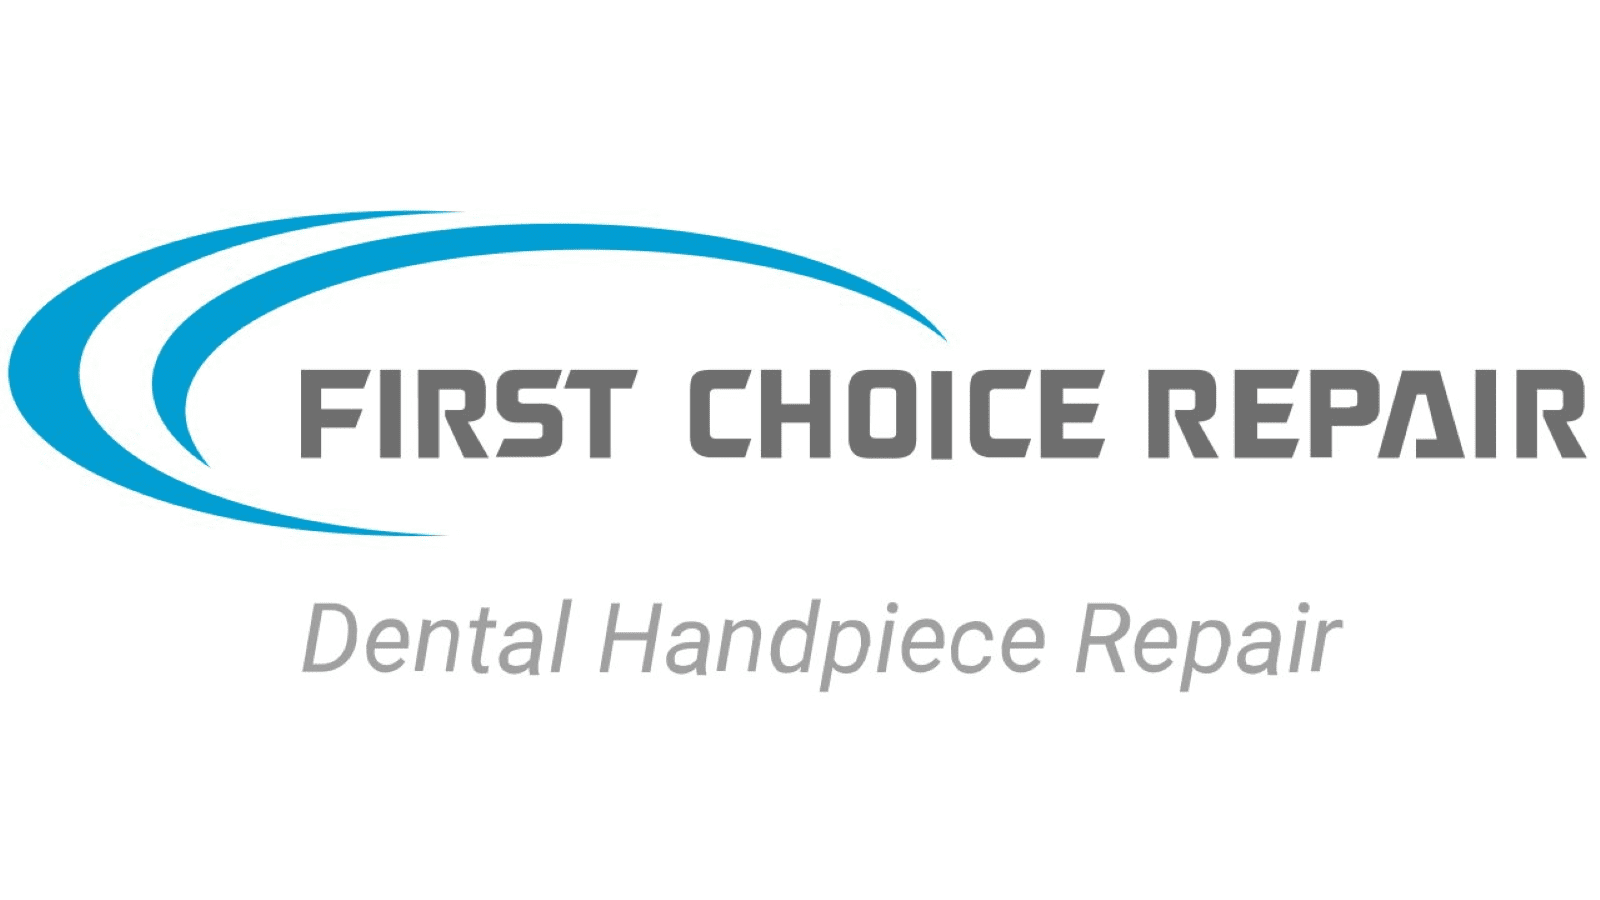 First choice repair logo